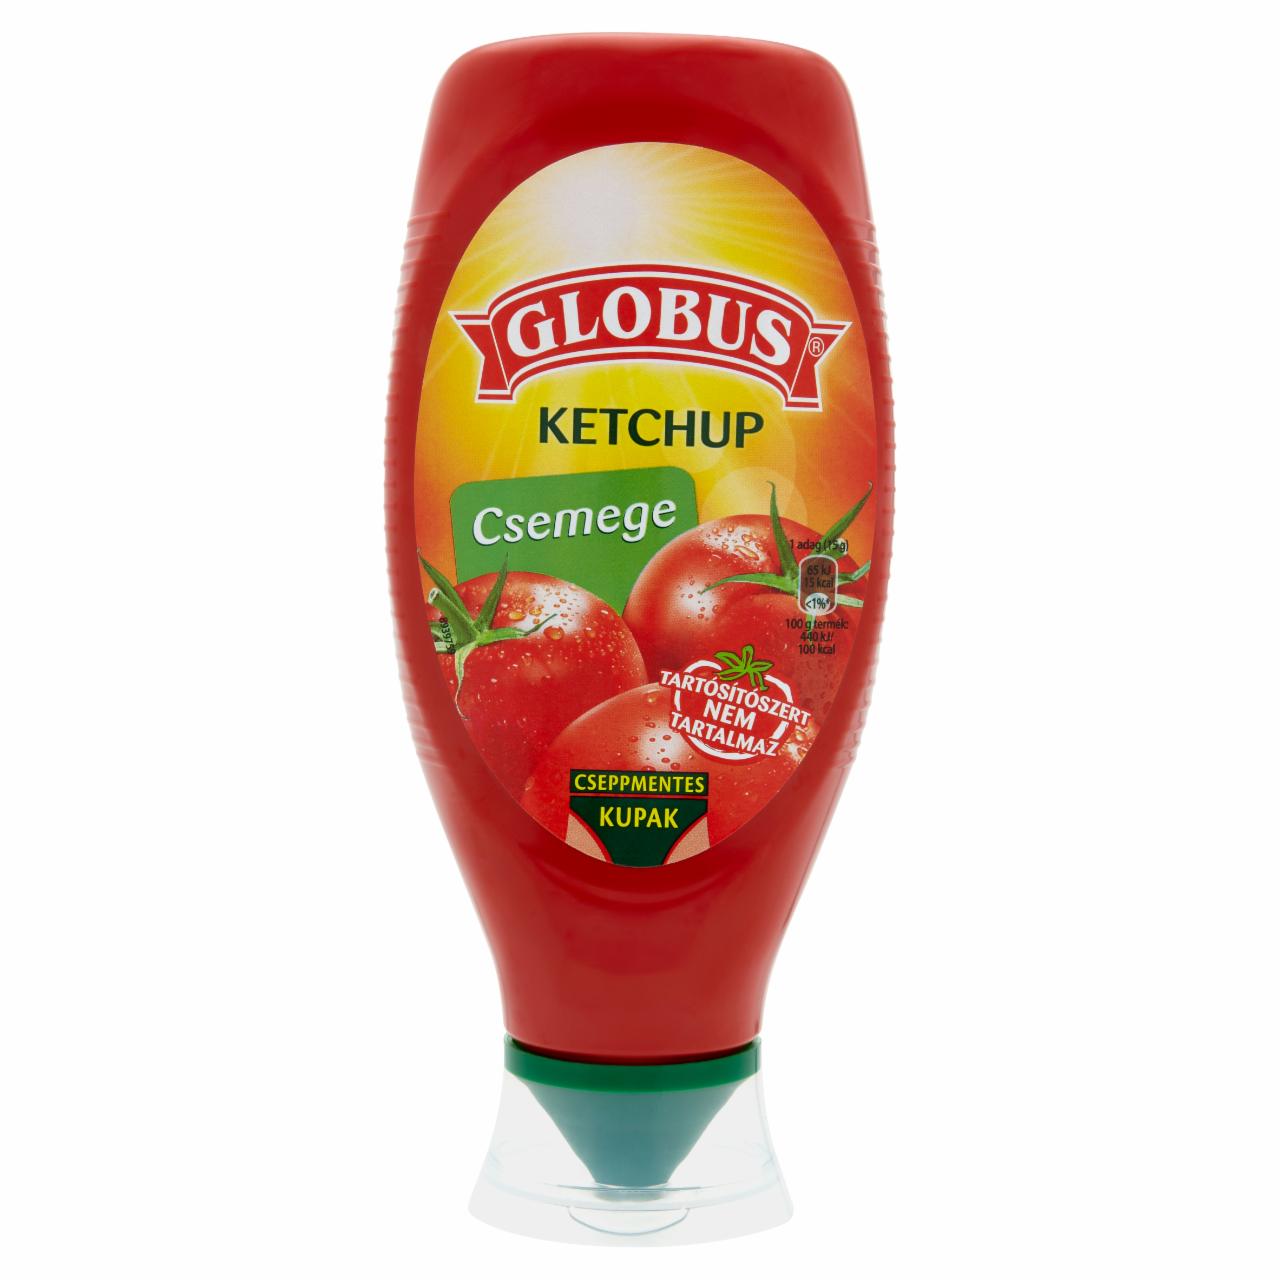 Képek - Globus csemege ketchup 700 g